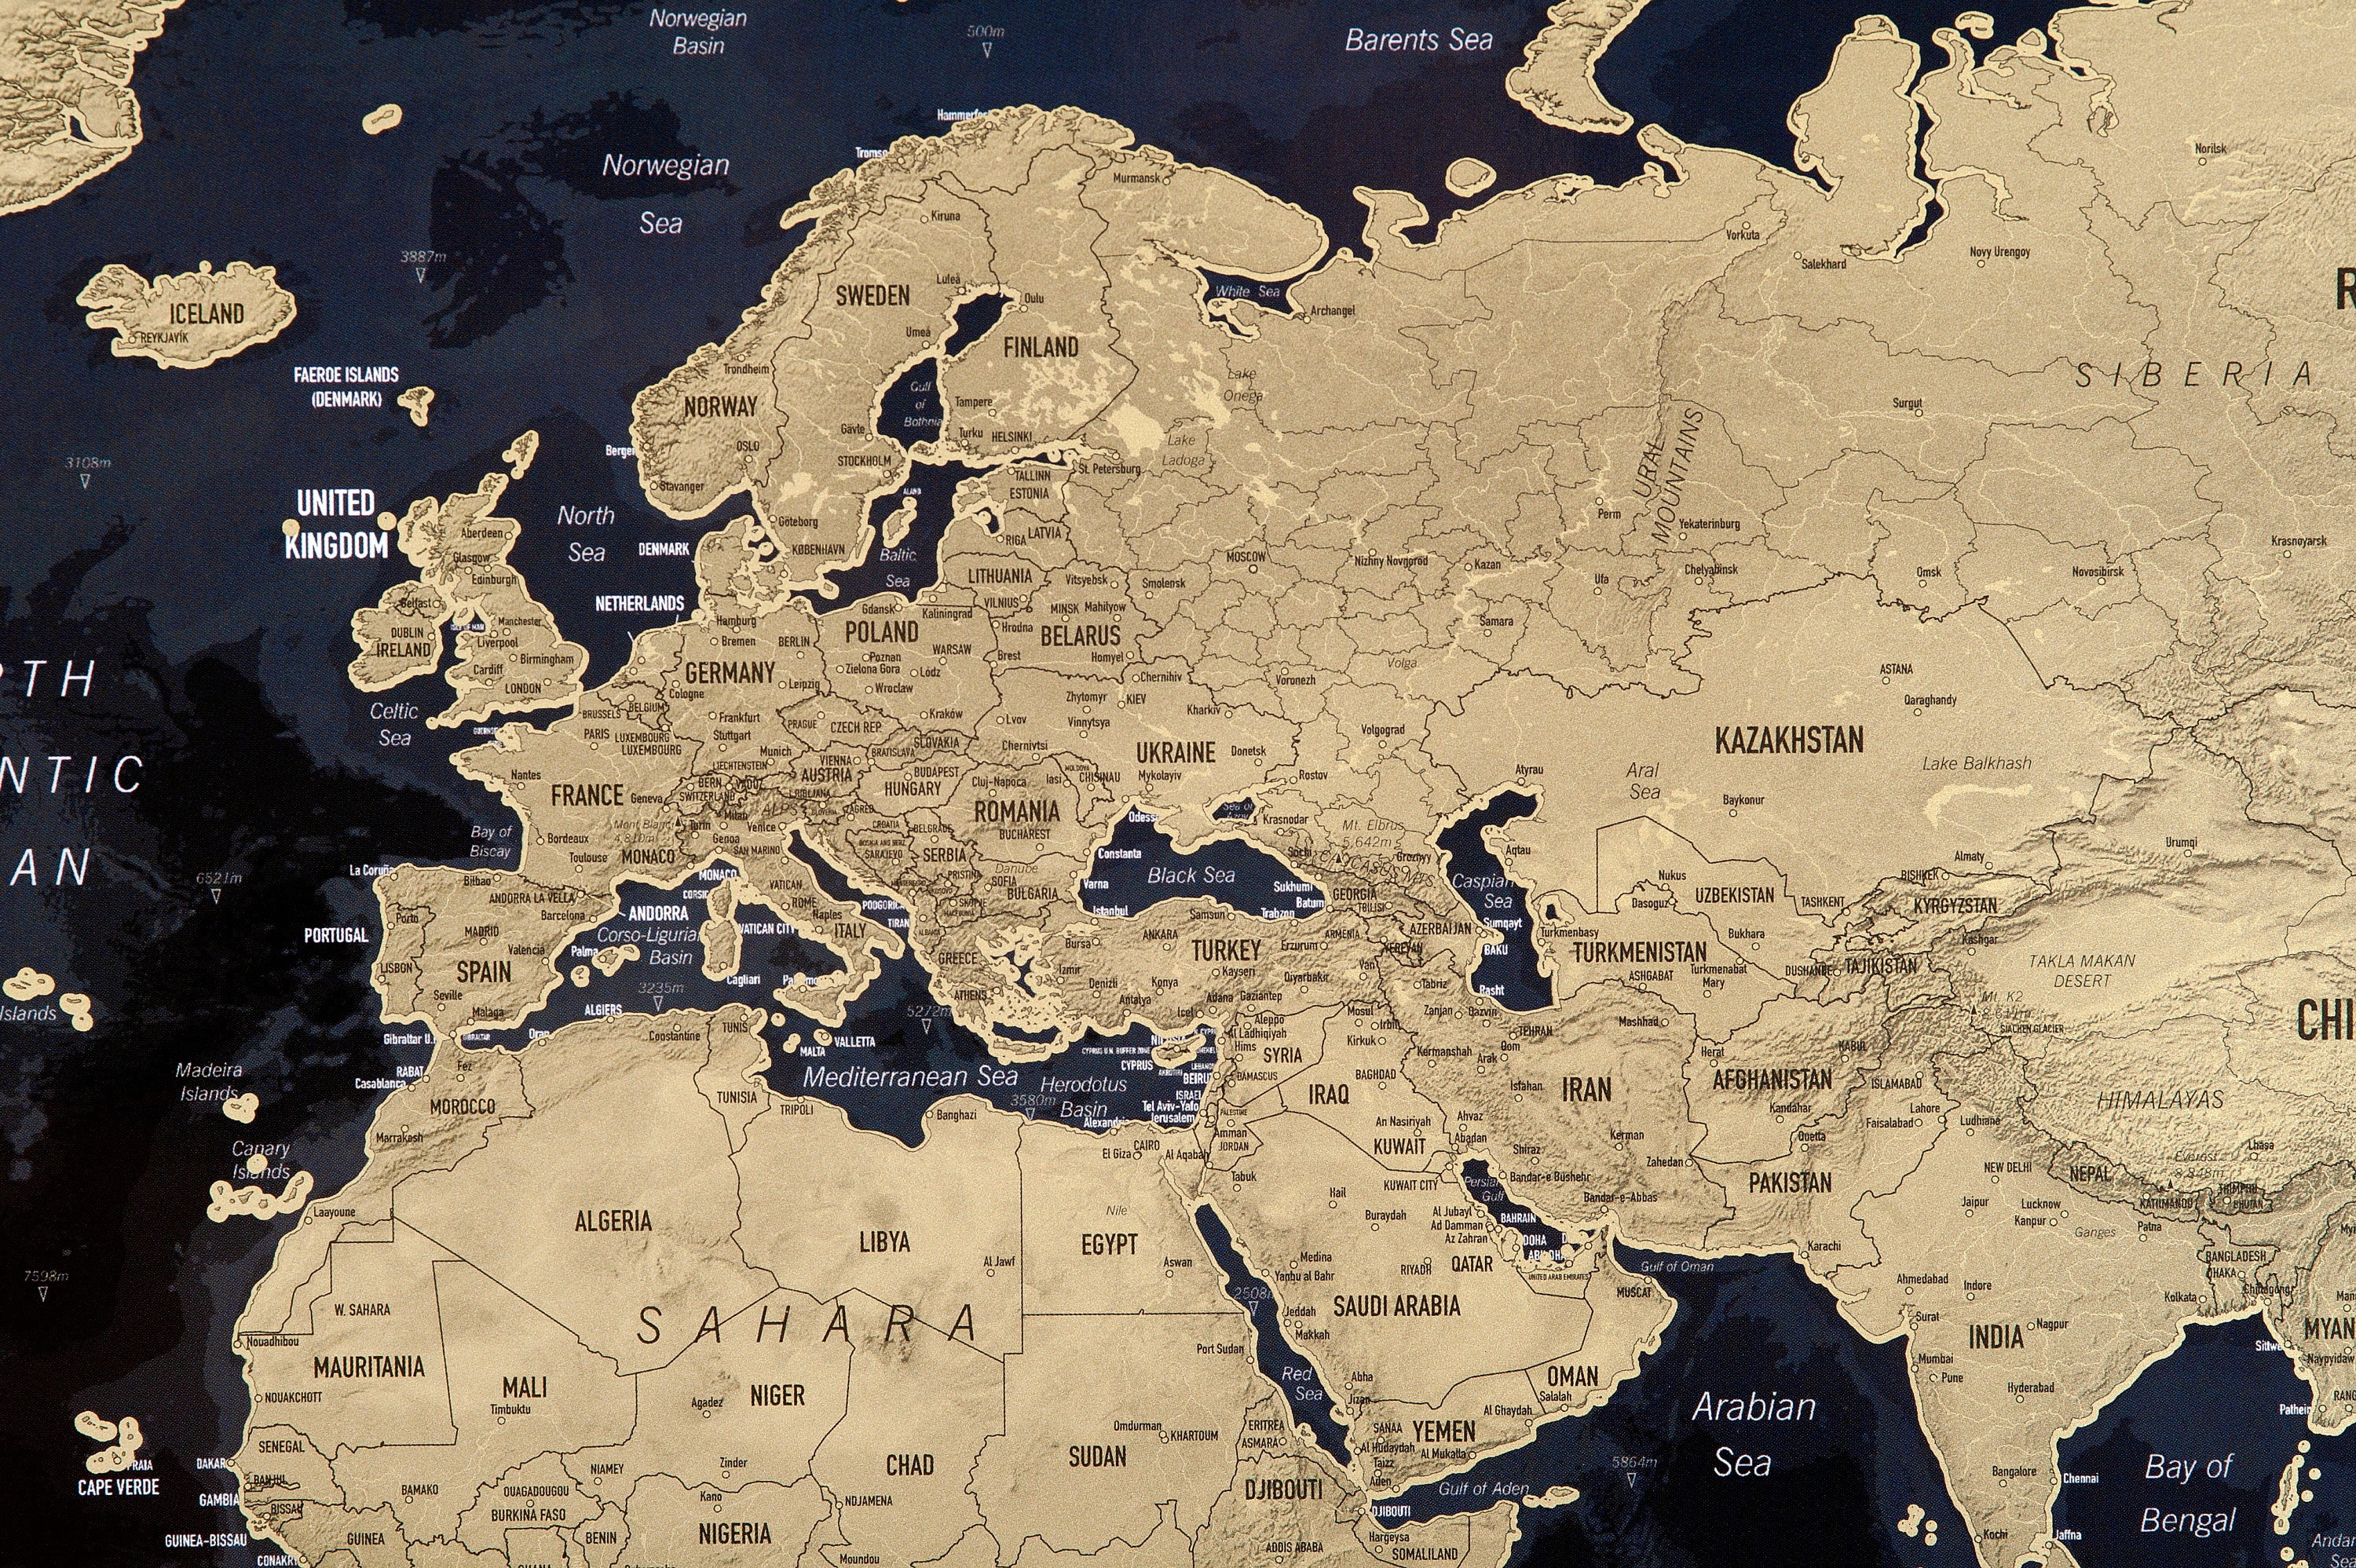 Carte du monde à gratter encadrée, cadeau de voyage idéal pour les  voyageurs, cadre noir